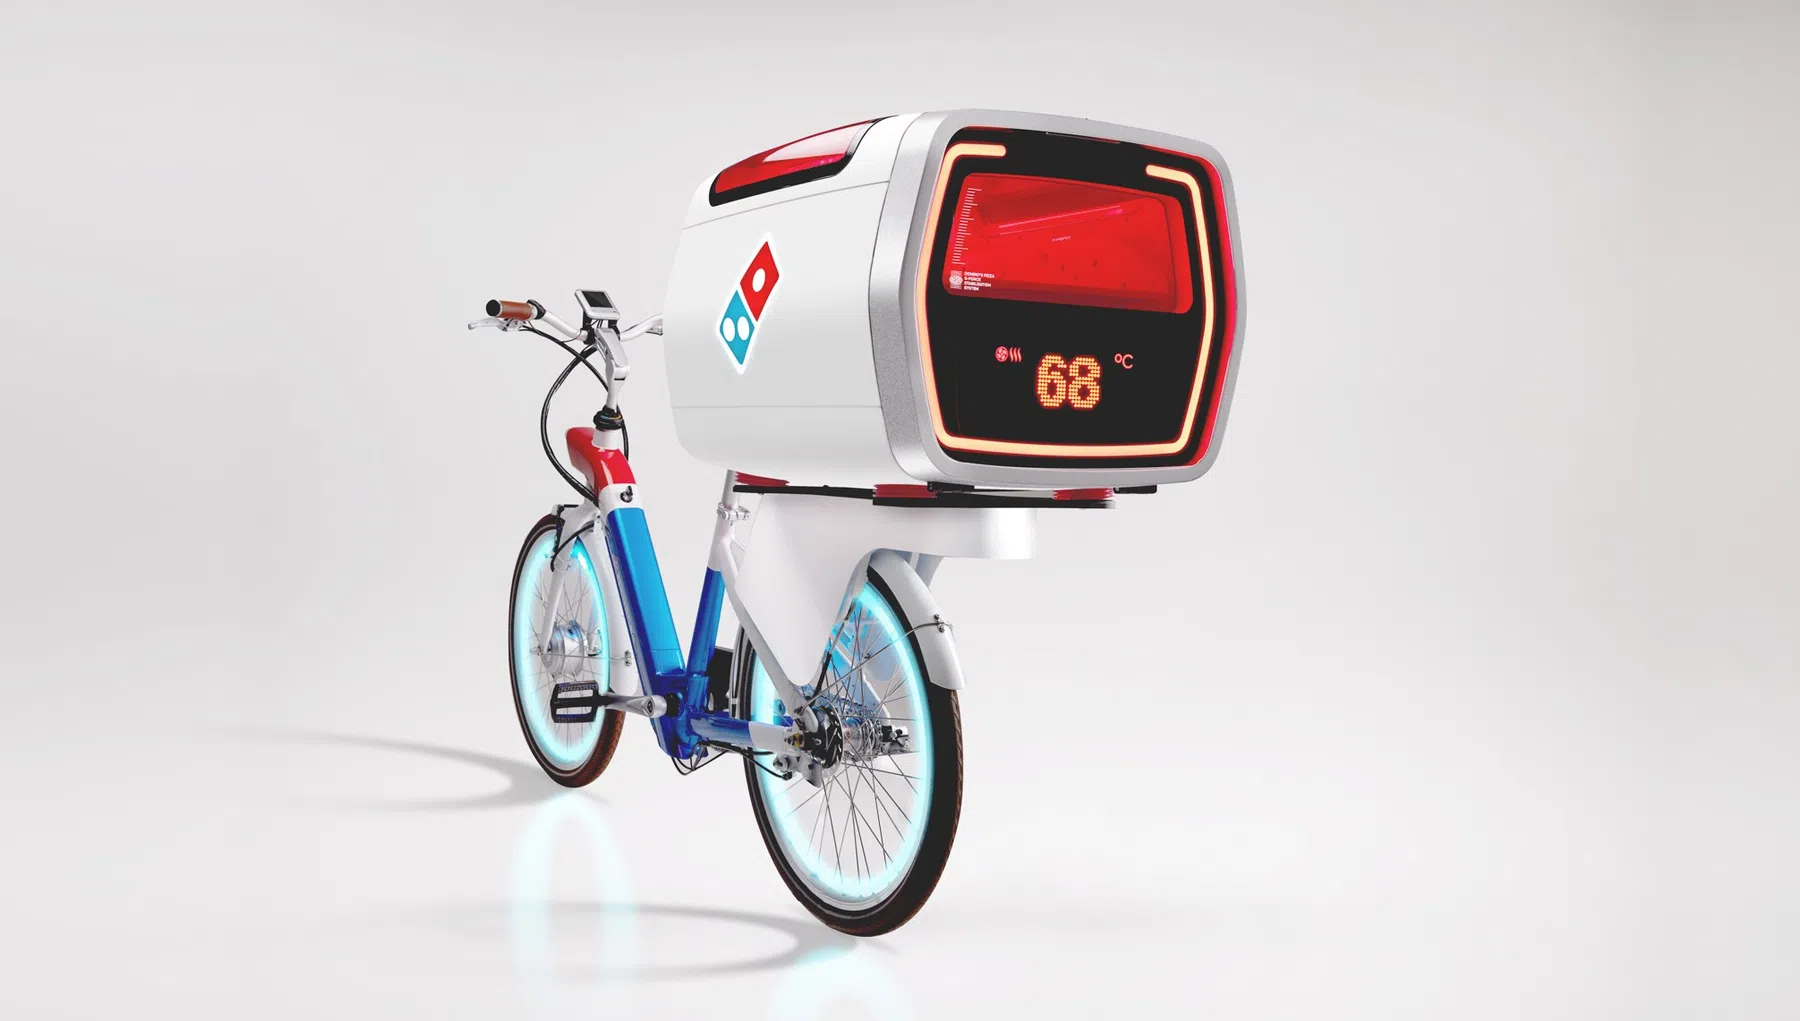 Met deze e-bike met ingebouwde oven blijft je bestelde pizza lekker warm